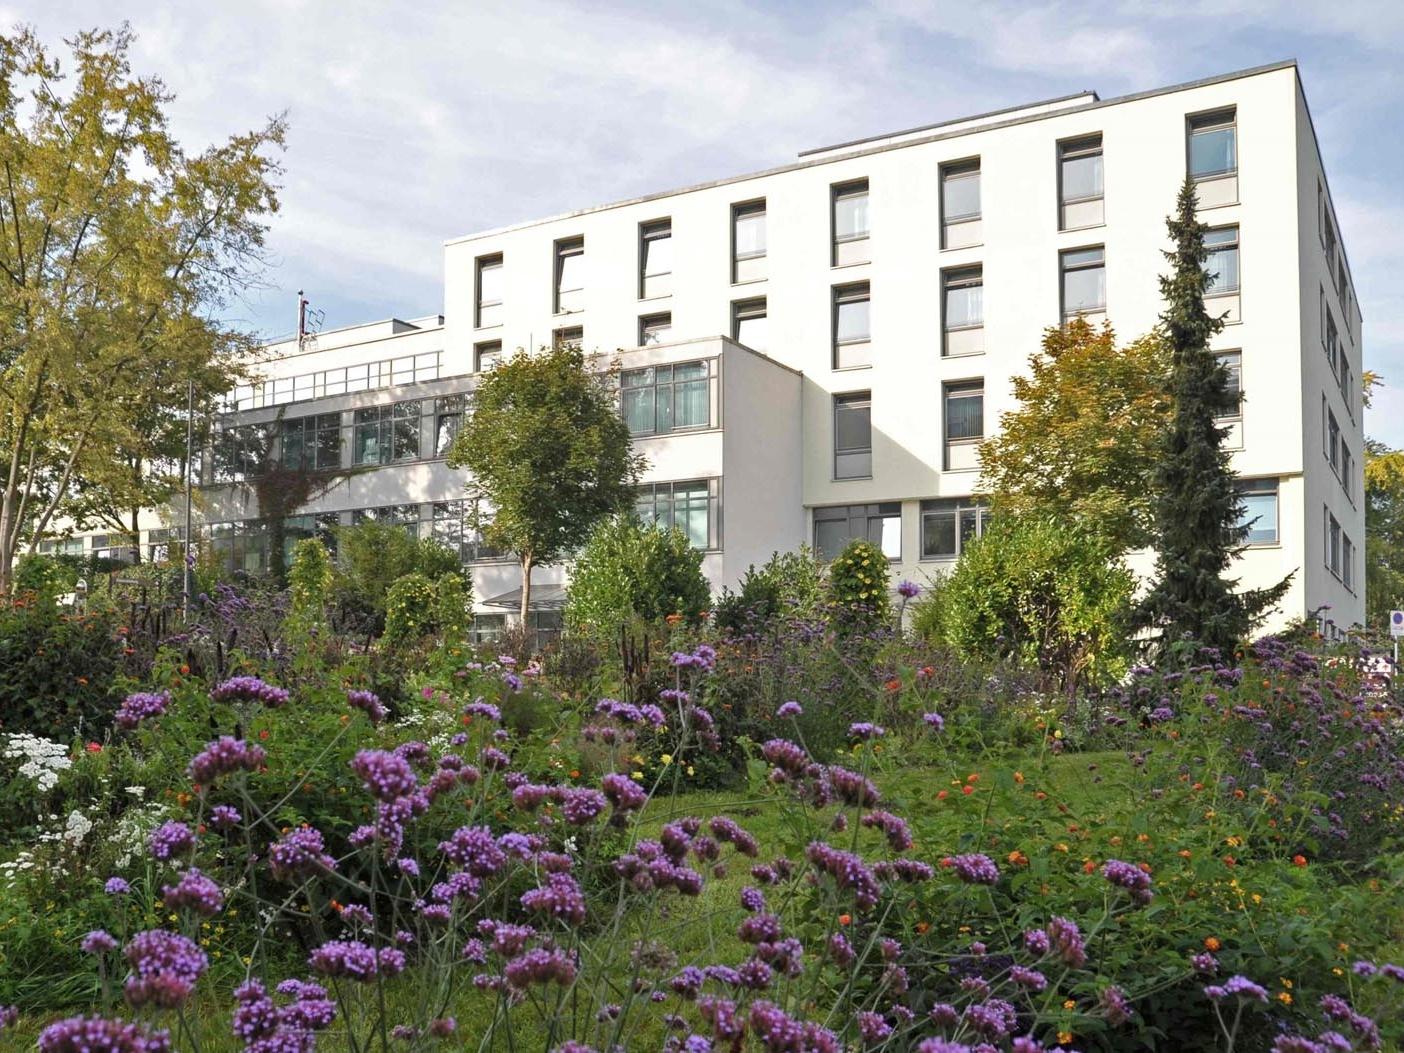 Reference property for Kermi shower design, District Hospital, Regensburg